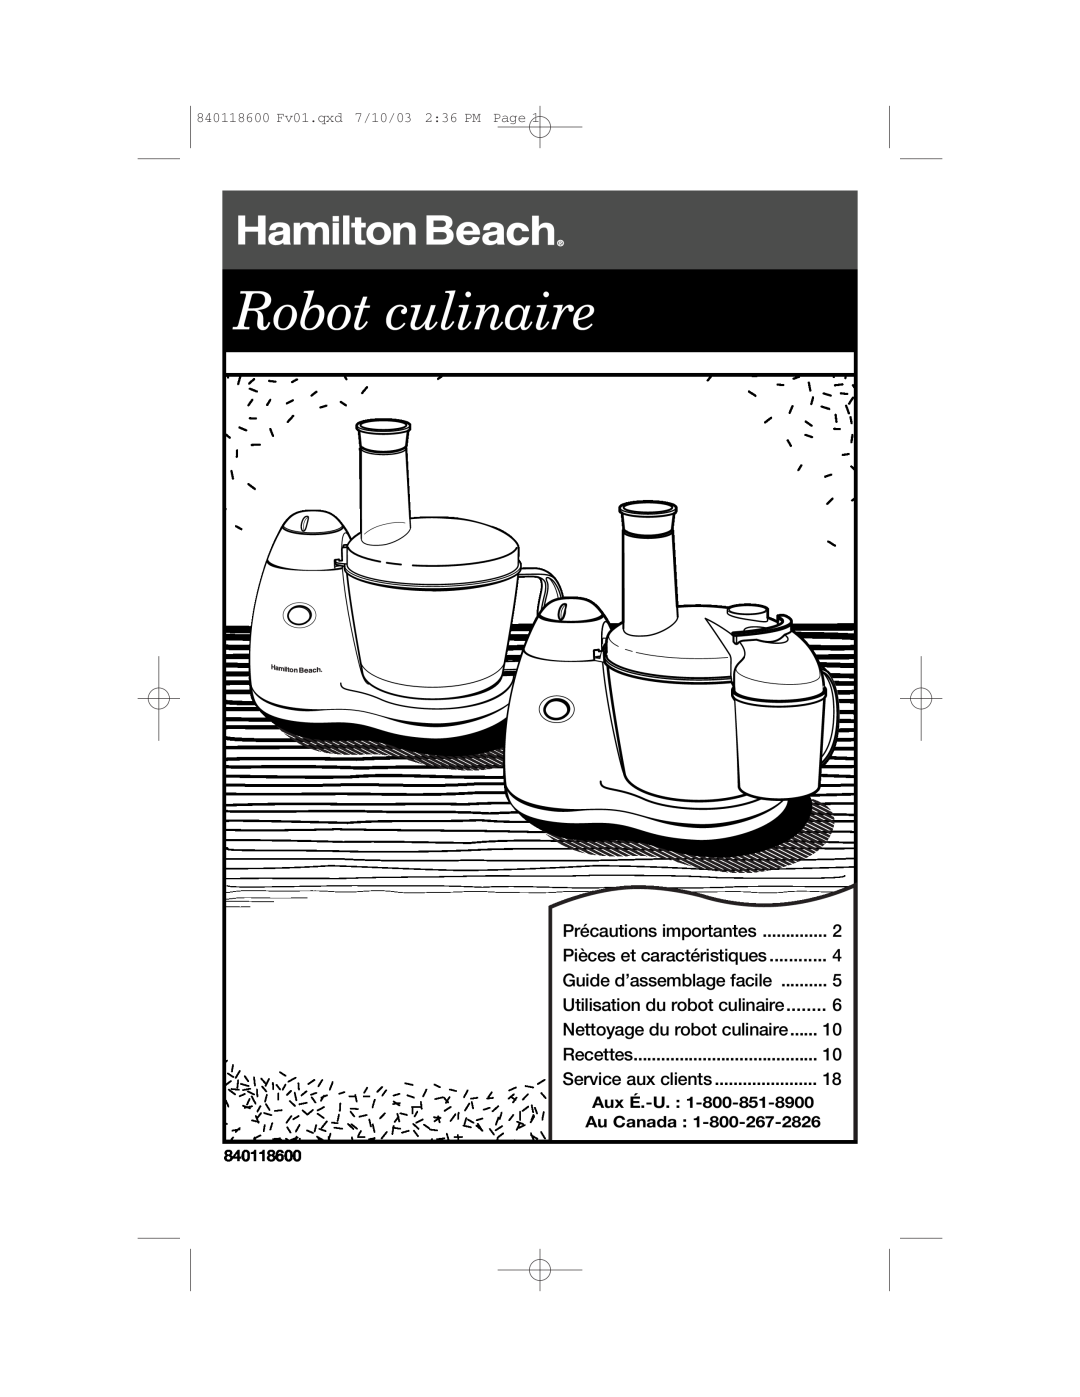 Hamilton Beach 70550RC Robot culinaire, Guide d’assemblage facile, Utilisation du robot culinaire, Précautions importantes 